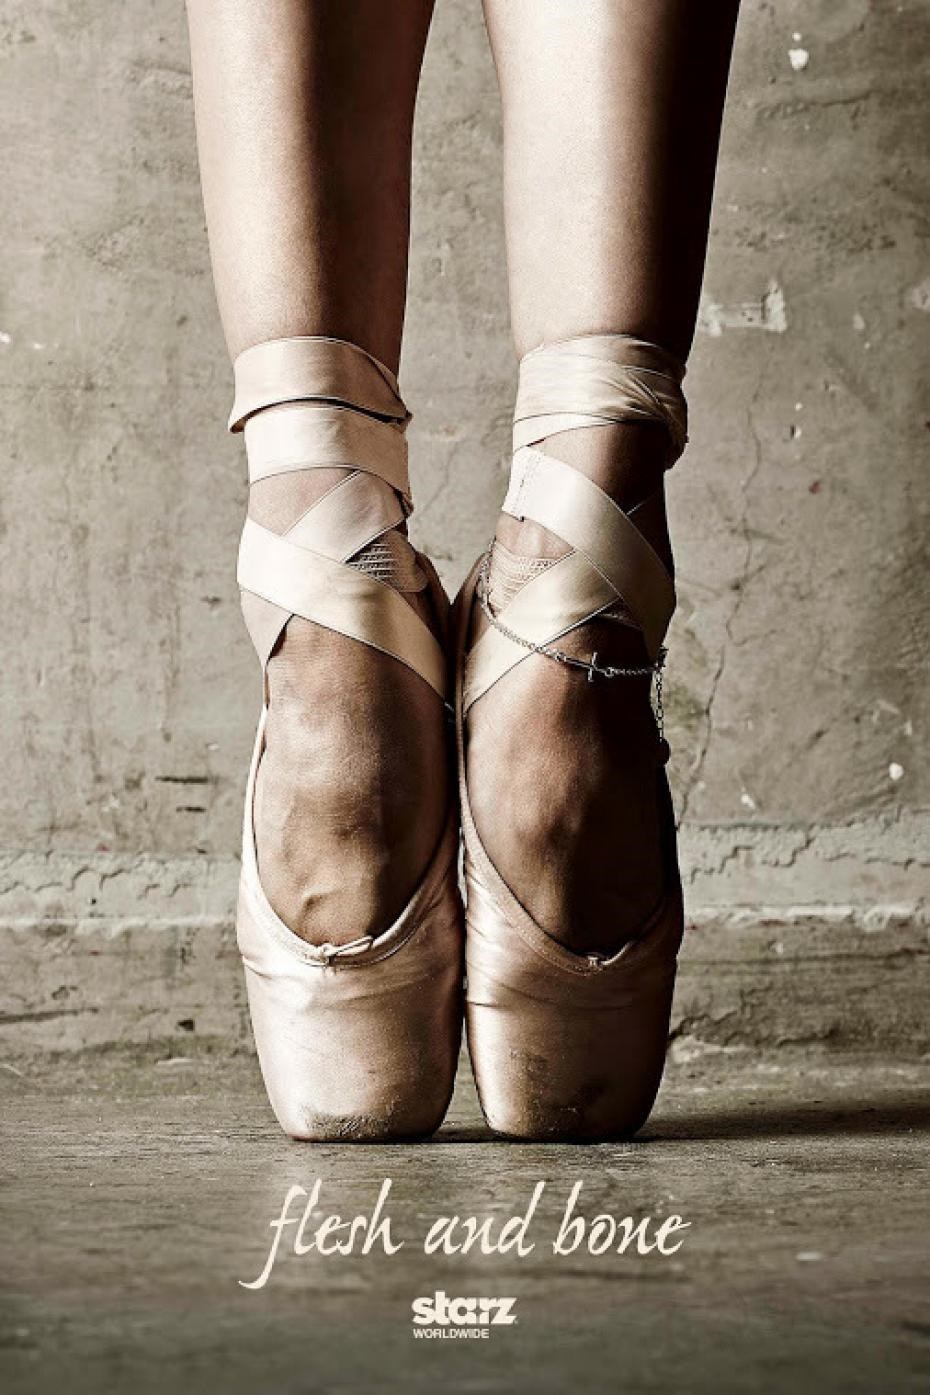 3 phim điện ảnh hé mở một thế giới ballet "không hoàn hảo"